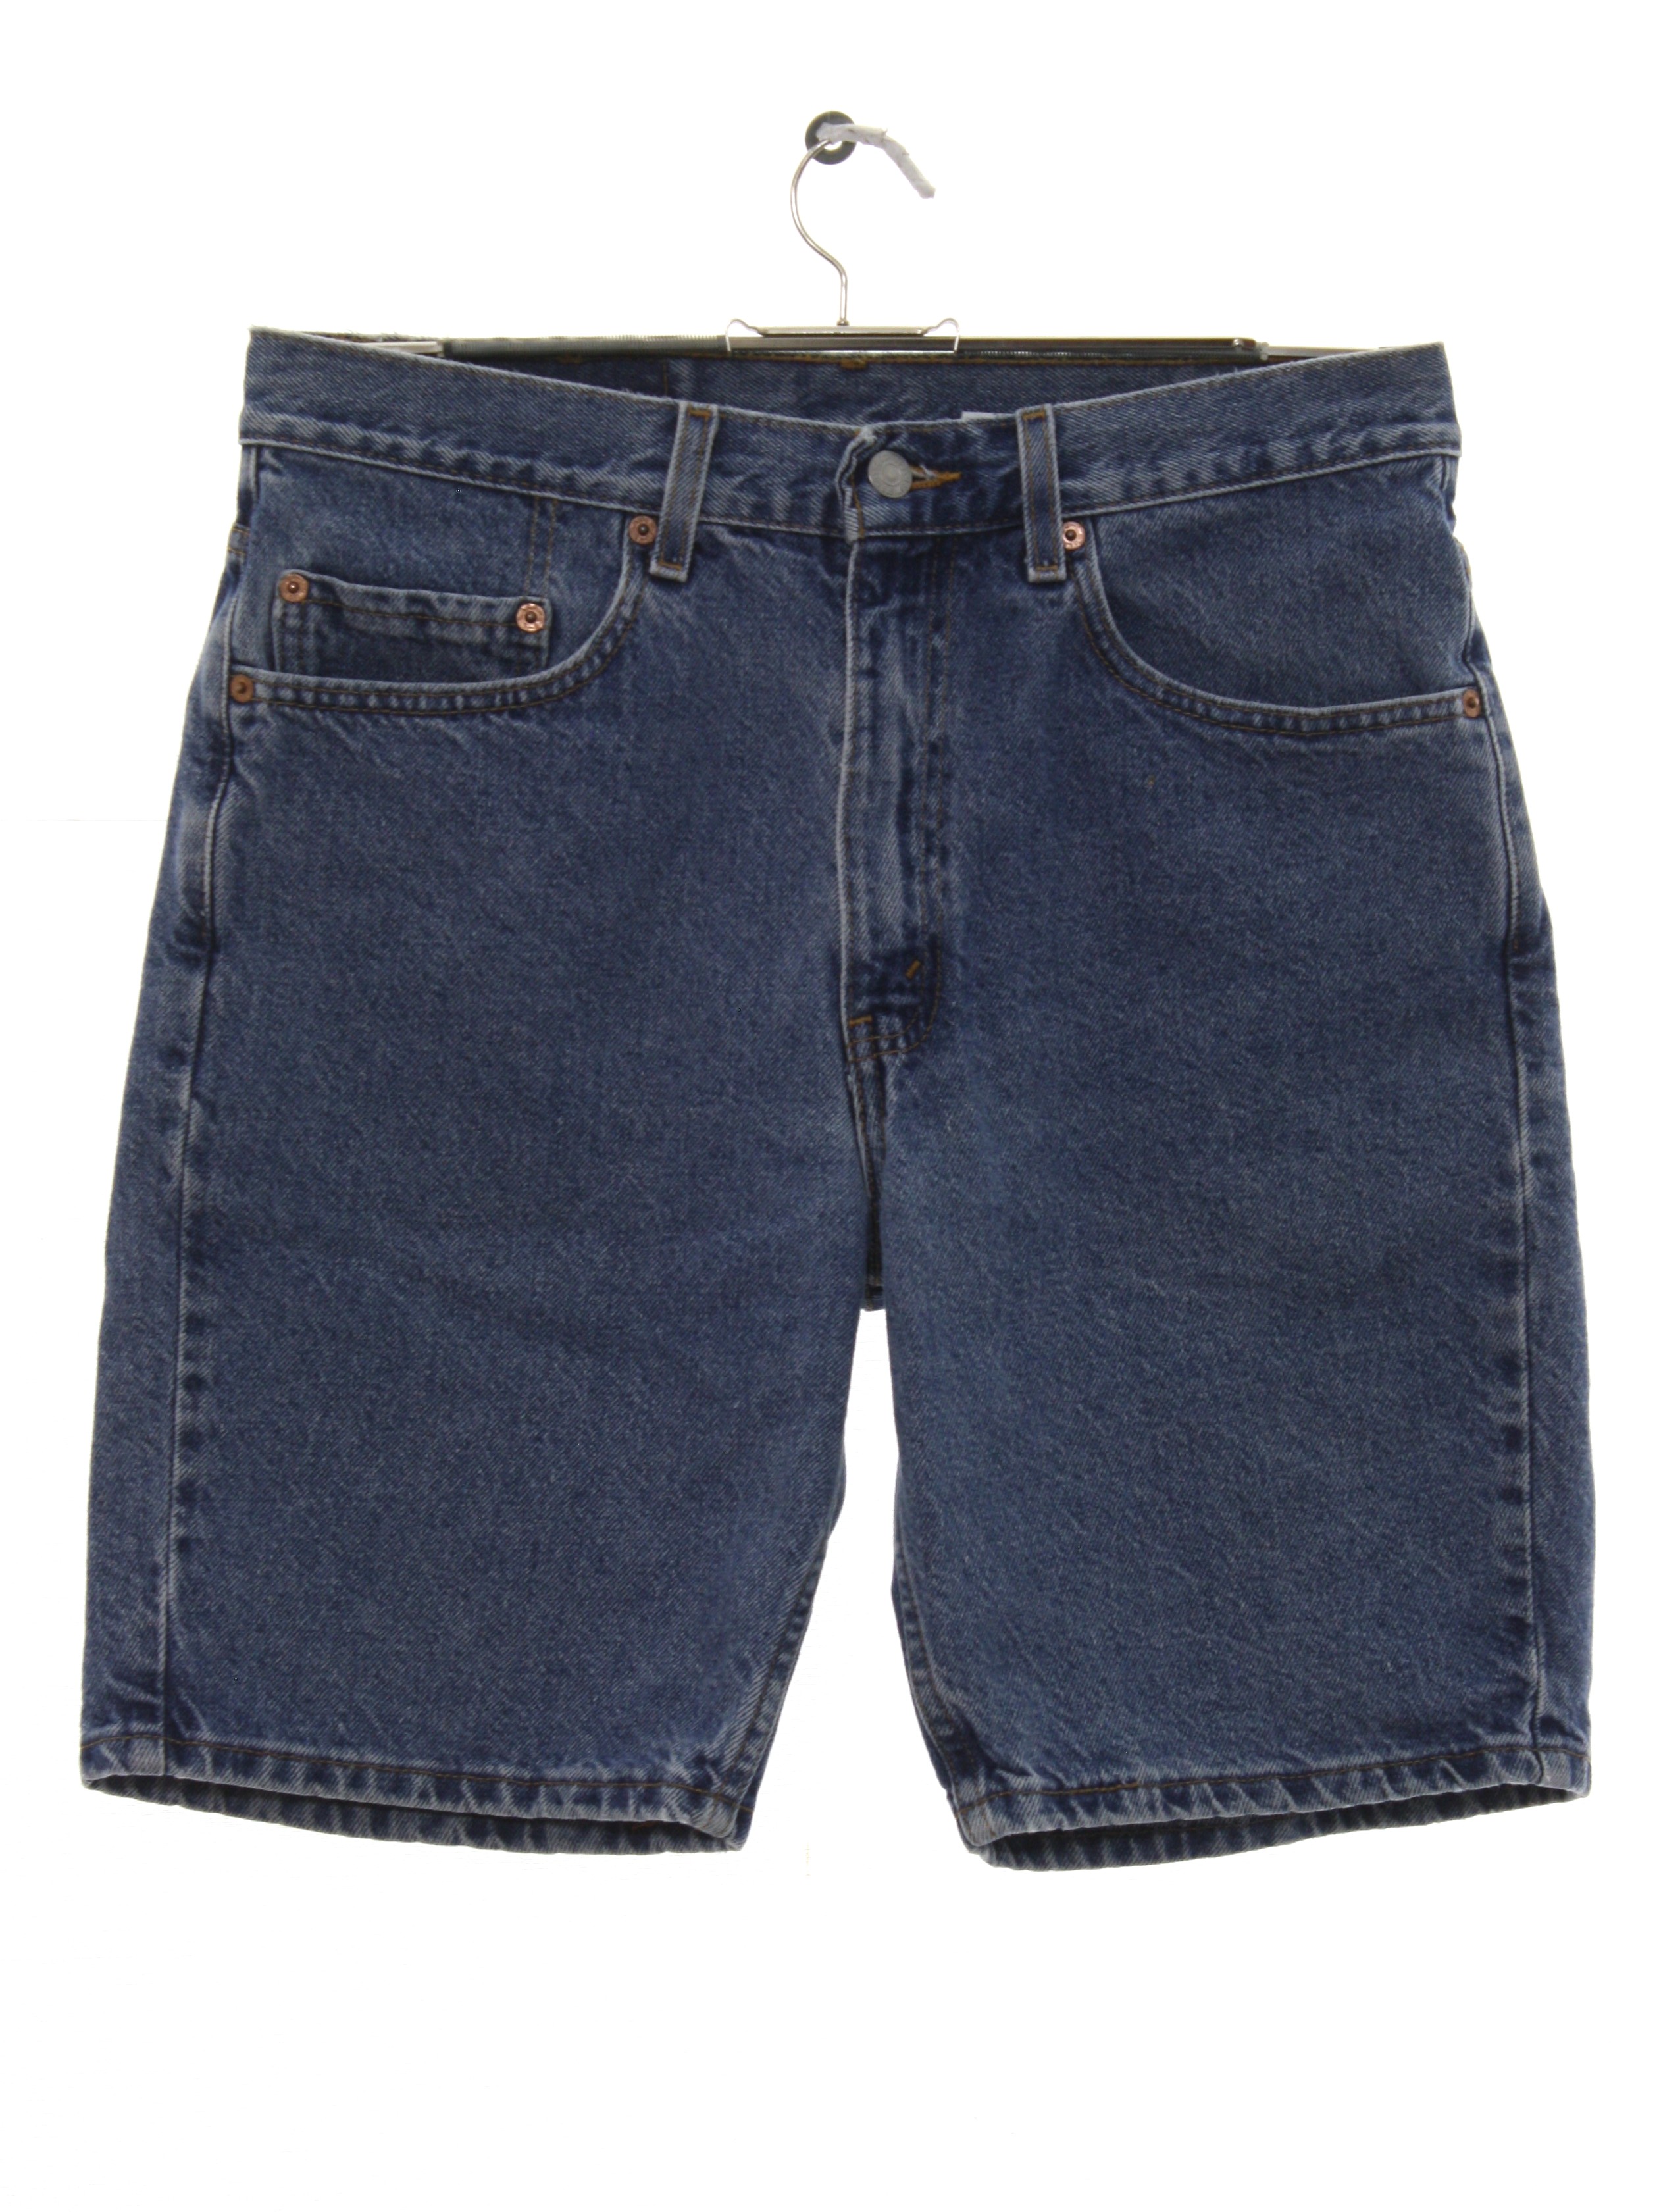 1990s Vintage Shorts: 90s -Levis 505- Mens blue background cotton denim ...